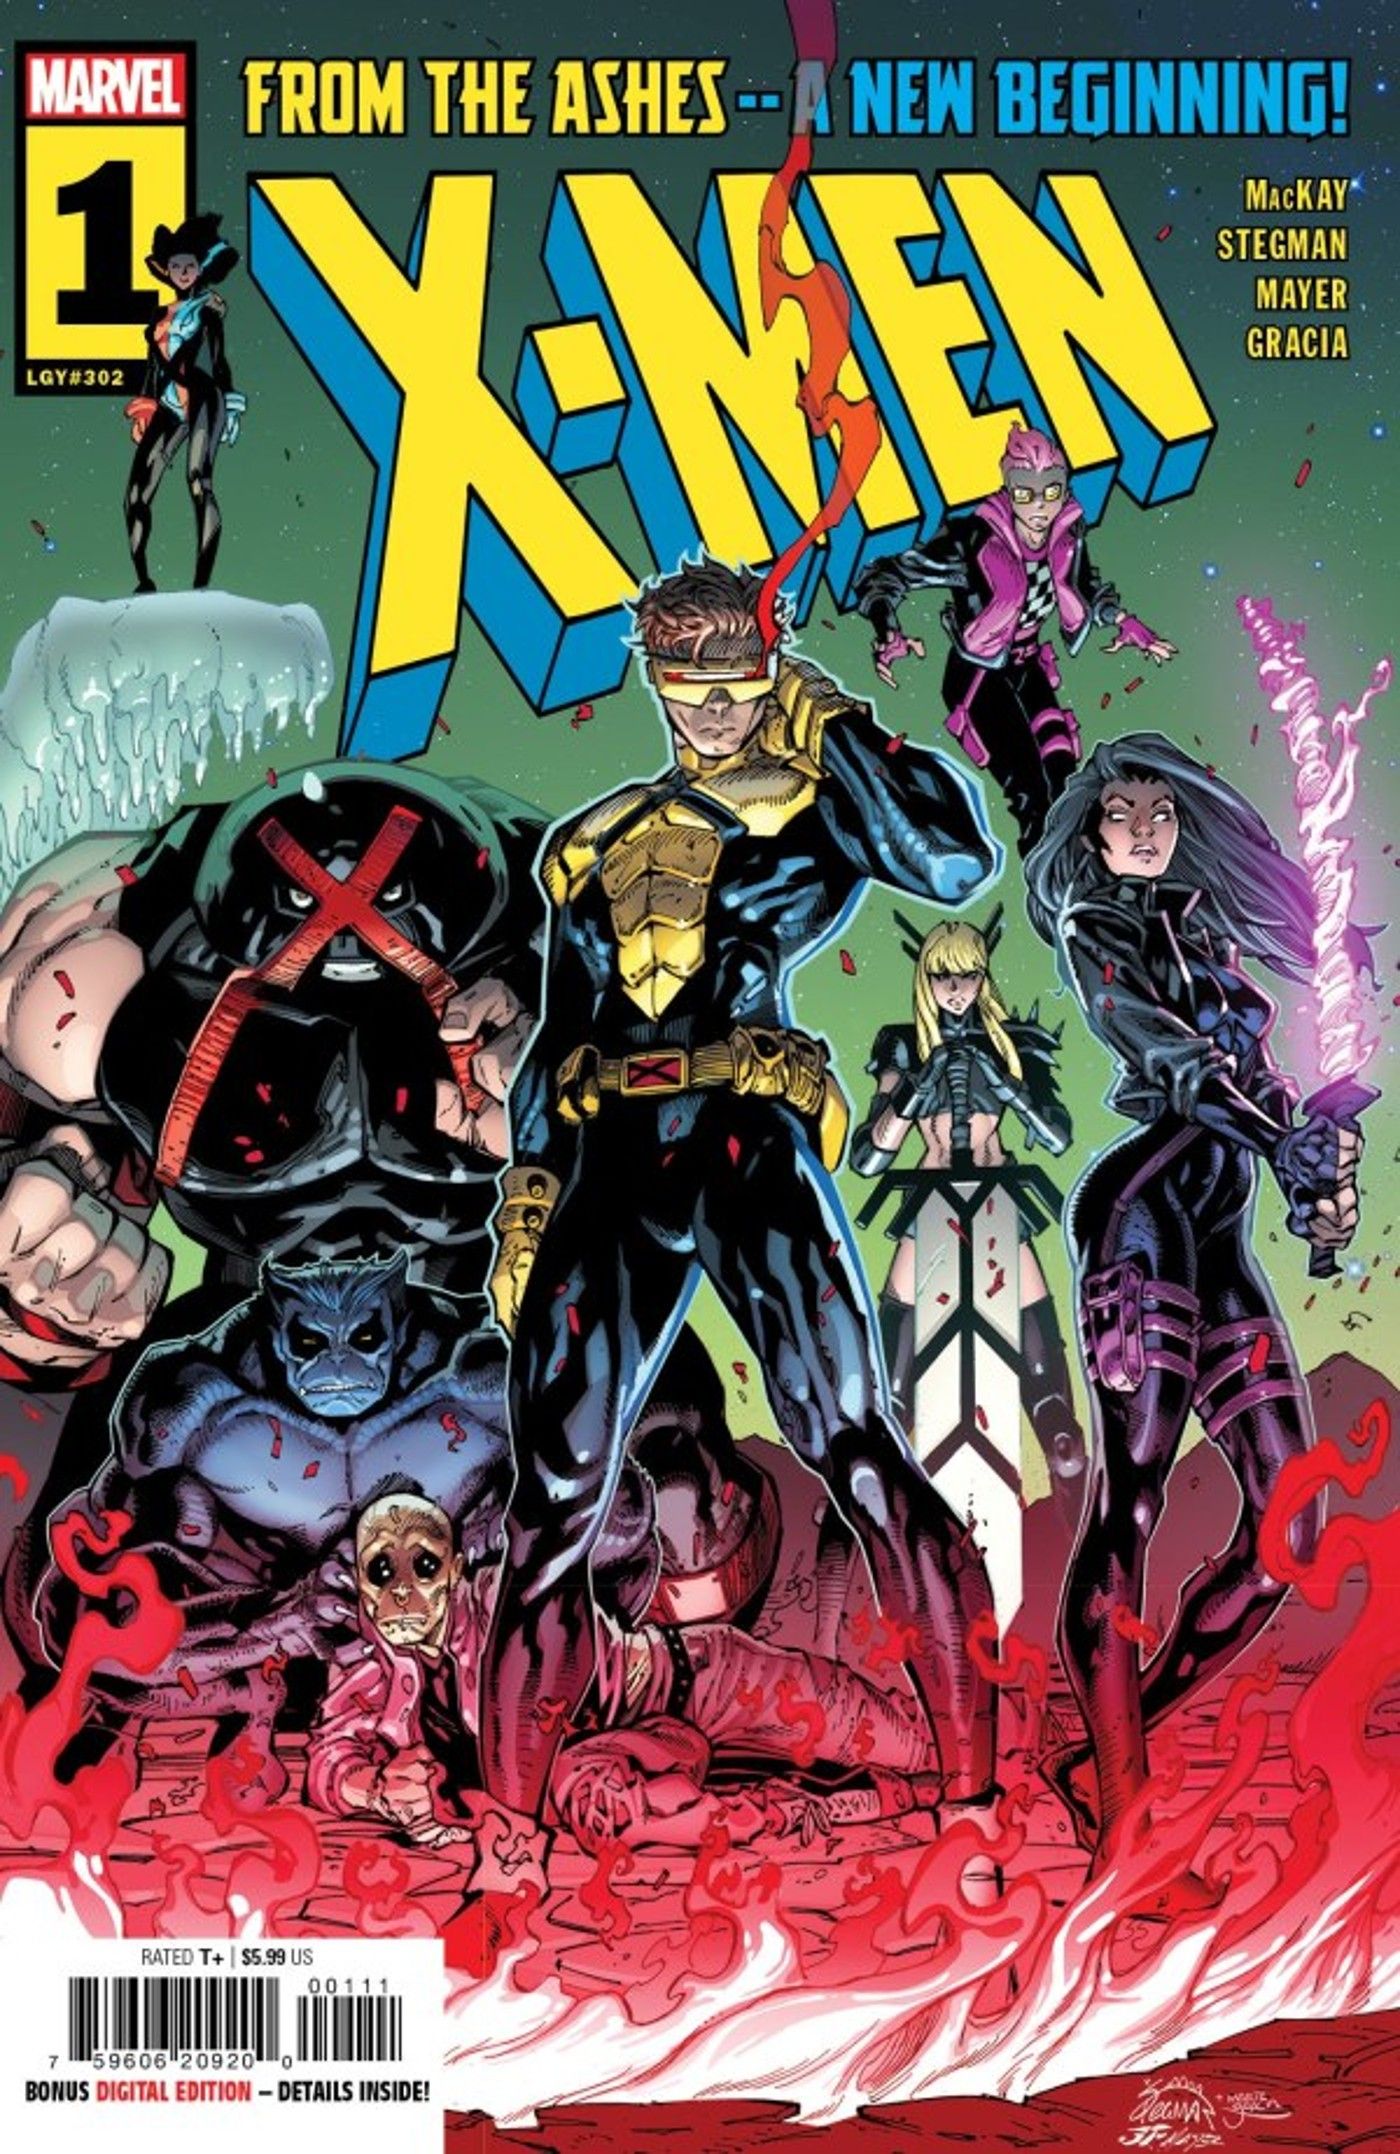 X-Men 1 capa nova da era das cinzas, mostrando ciclope com sua equipe, incluindo fera